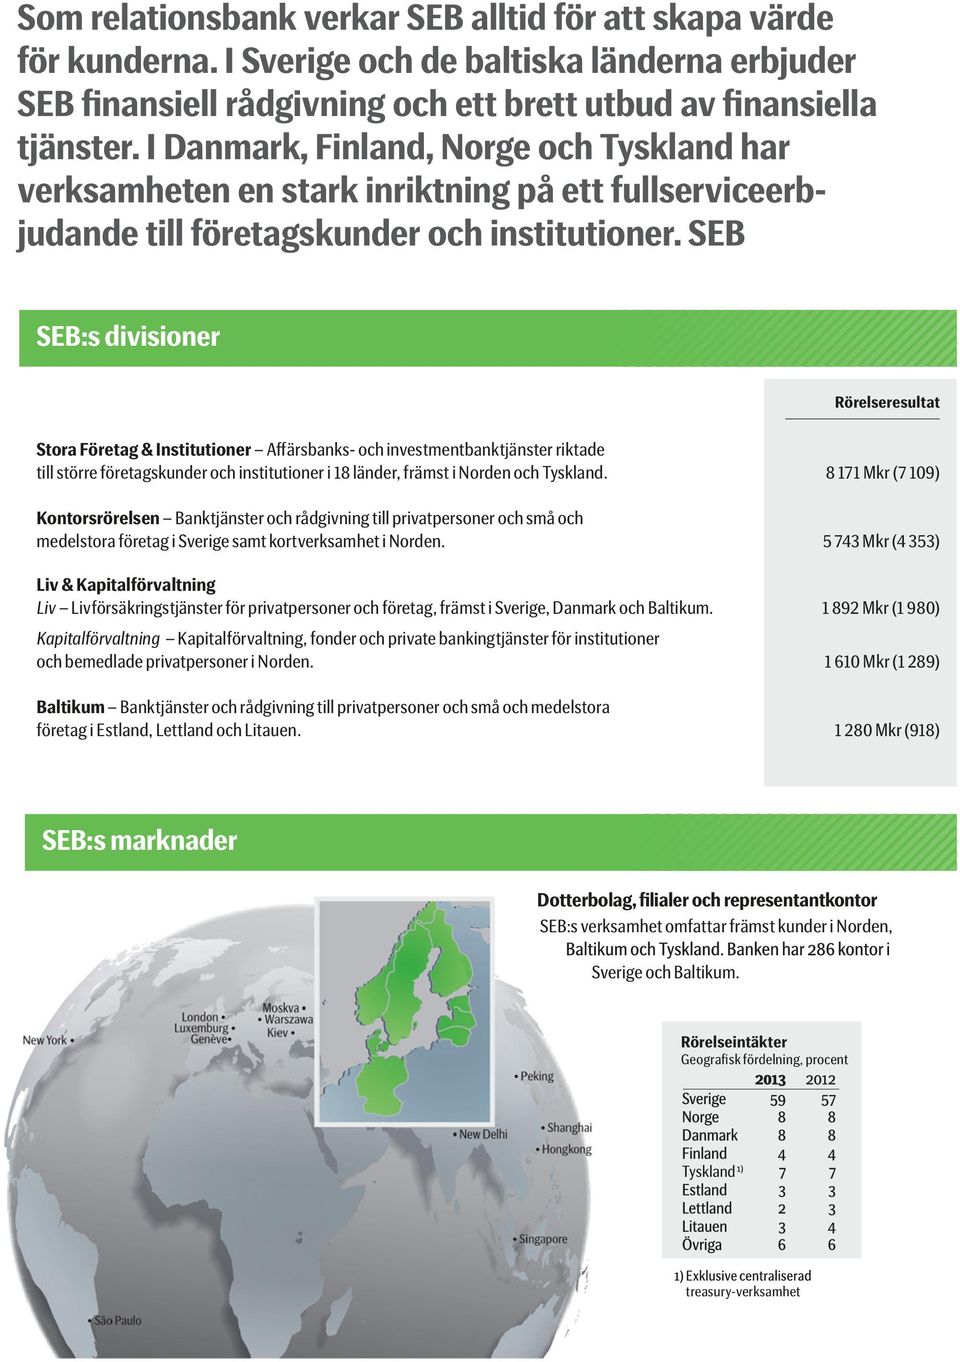 SEB SEB:s divisioner Rörelseresultat Stora Företag & Institutioner Affärsbanks- och investmentbanktjänster riktade till större företagskunder och institutioner i 18 länder, främst i Norden och